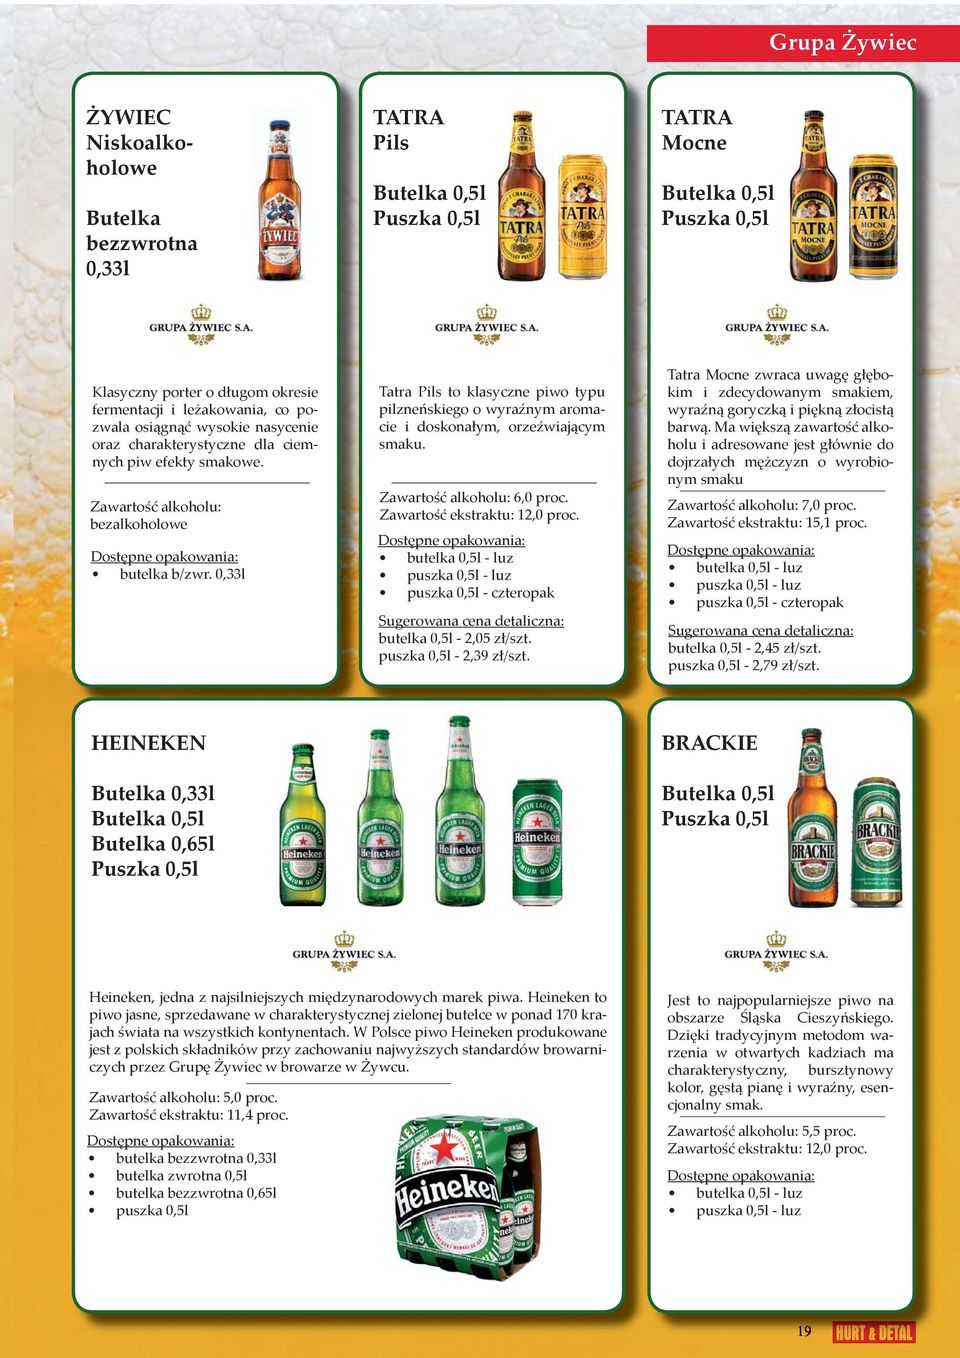 0,33l Tatra Pils to klasyczne piwo typu pilzneńskiego o wyraźnym aromacie i doskonałym, orzeźwiającym smaku. Zawartość alkoholu: 6,0 proc. Zawartość ekstraktu: 12,0 proc.